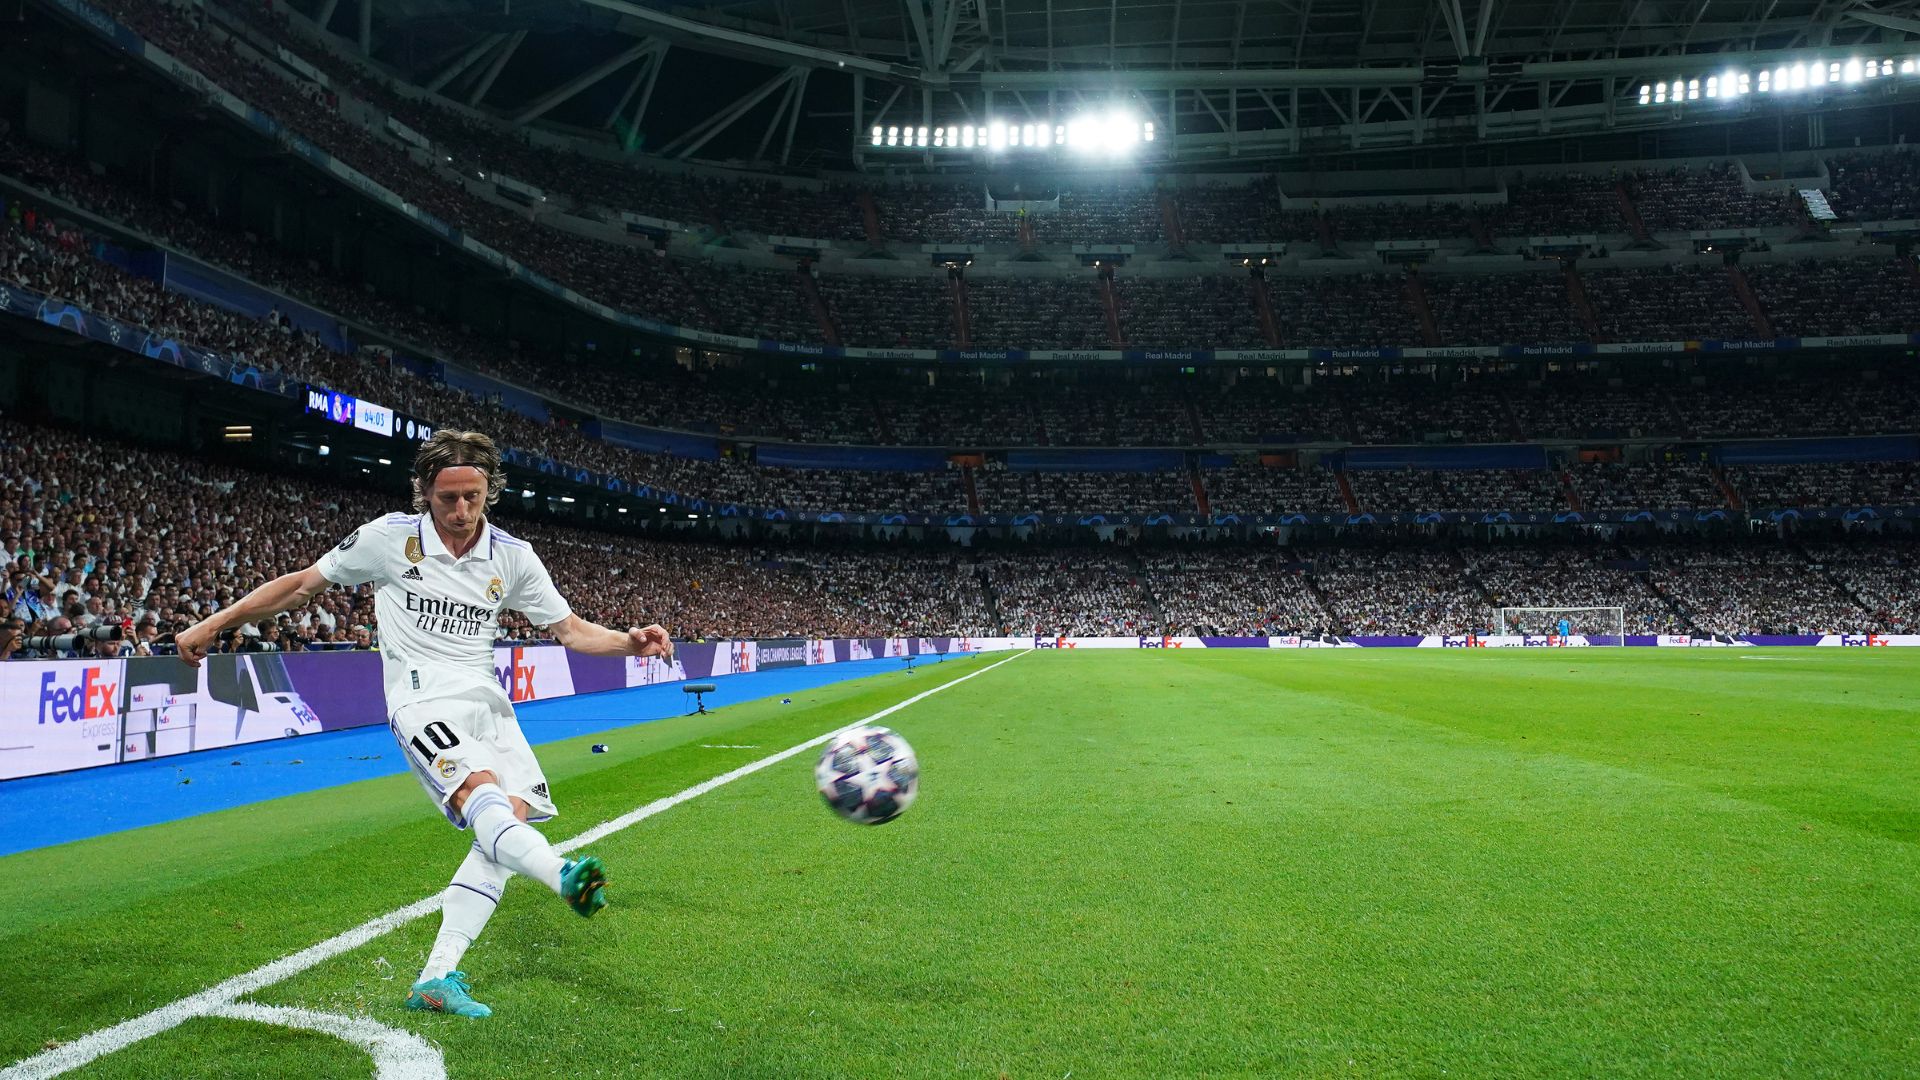 Modric cobrando escanteio durante a partida contra o Manchester City (Crédito: Getty Images)